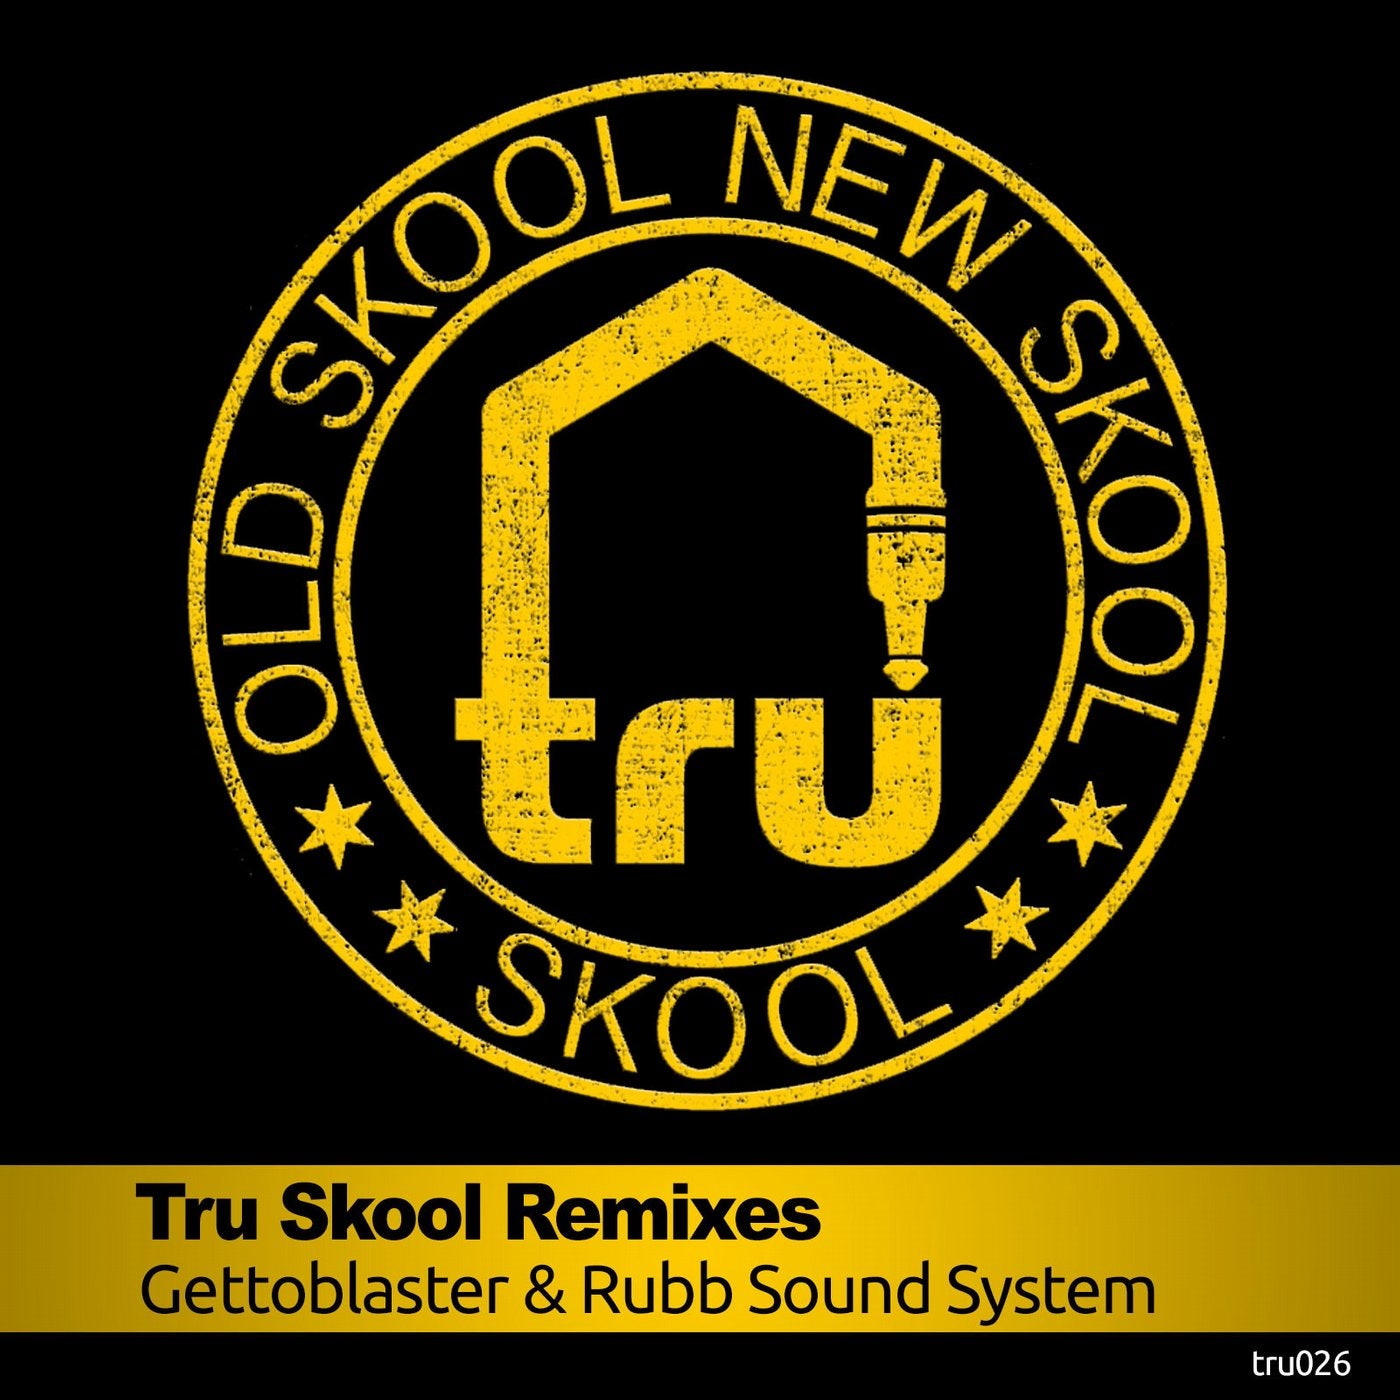 TRU Skool Remixes